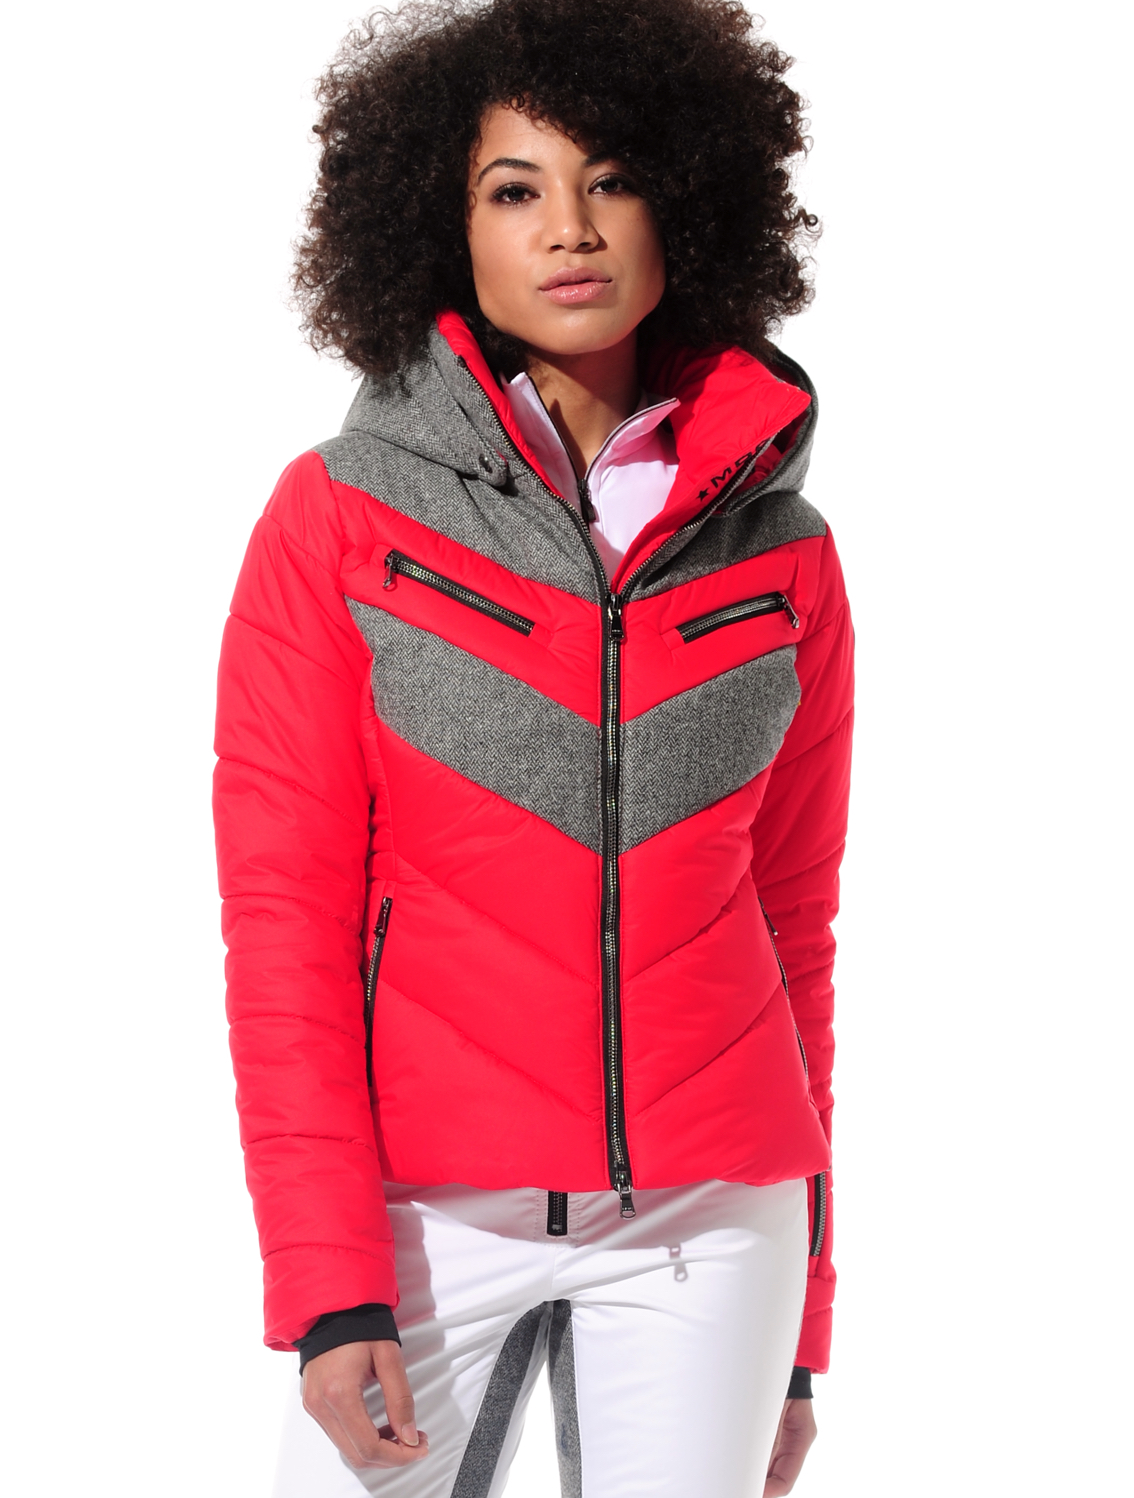 stretch ski jacket red/grey 